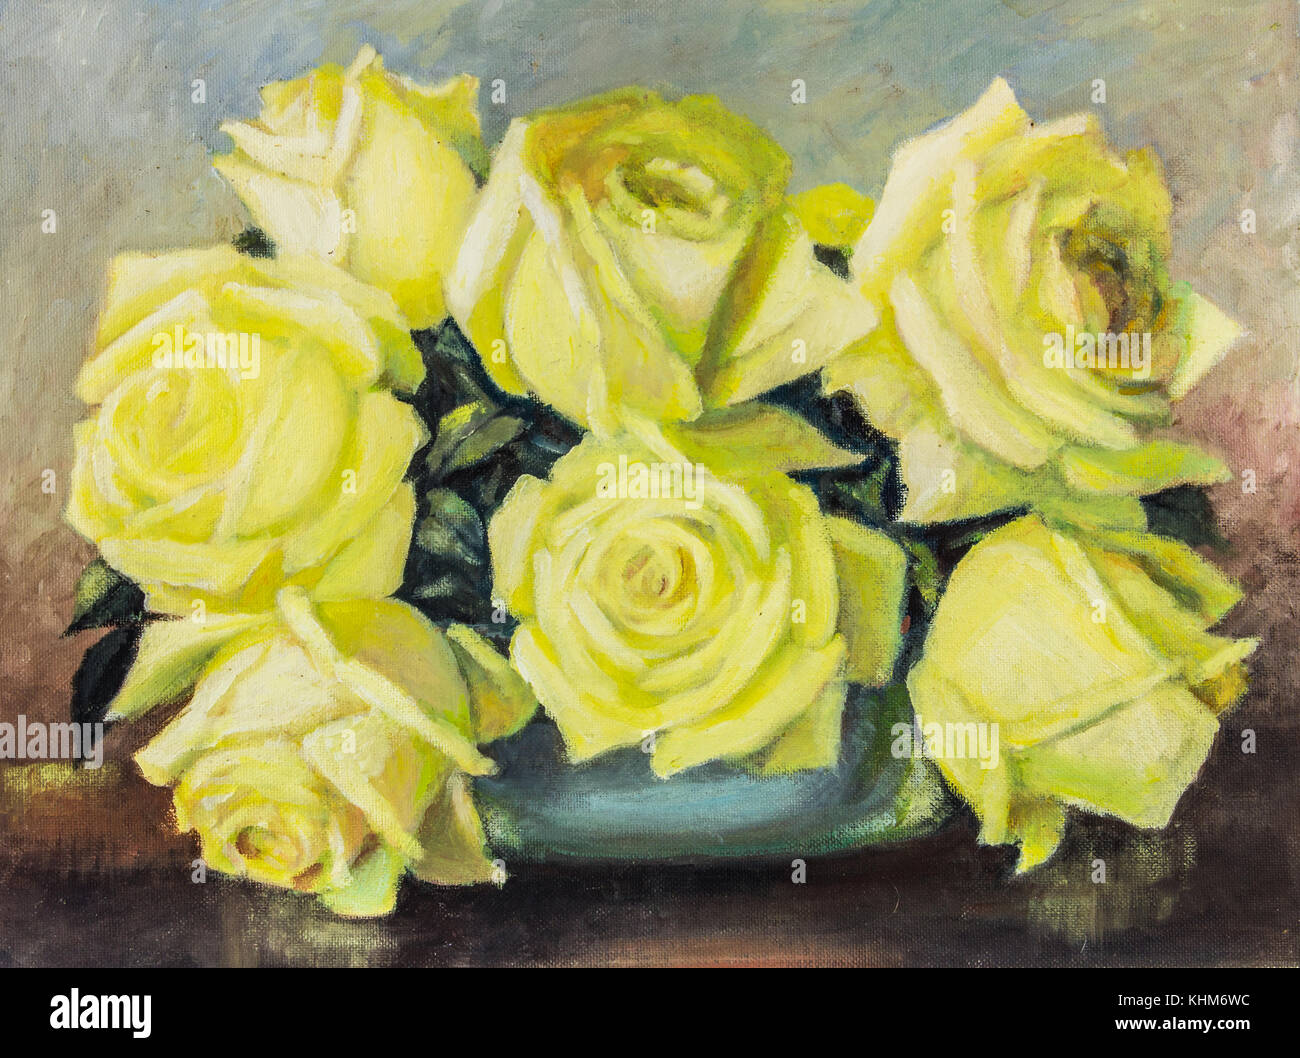 Huile originale sur toile - rose jaune still life close up dans un vase sur la table marron - arrangement de fleurs roses contre fond bleu Banque D'Images